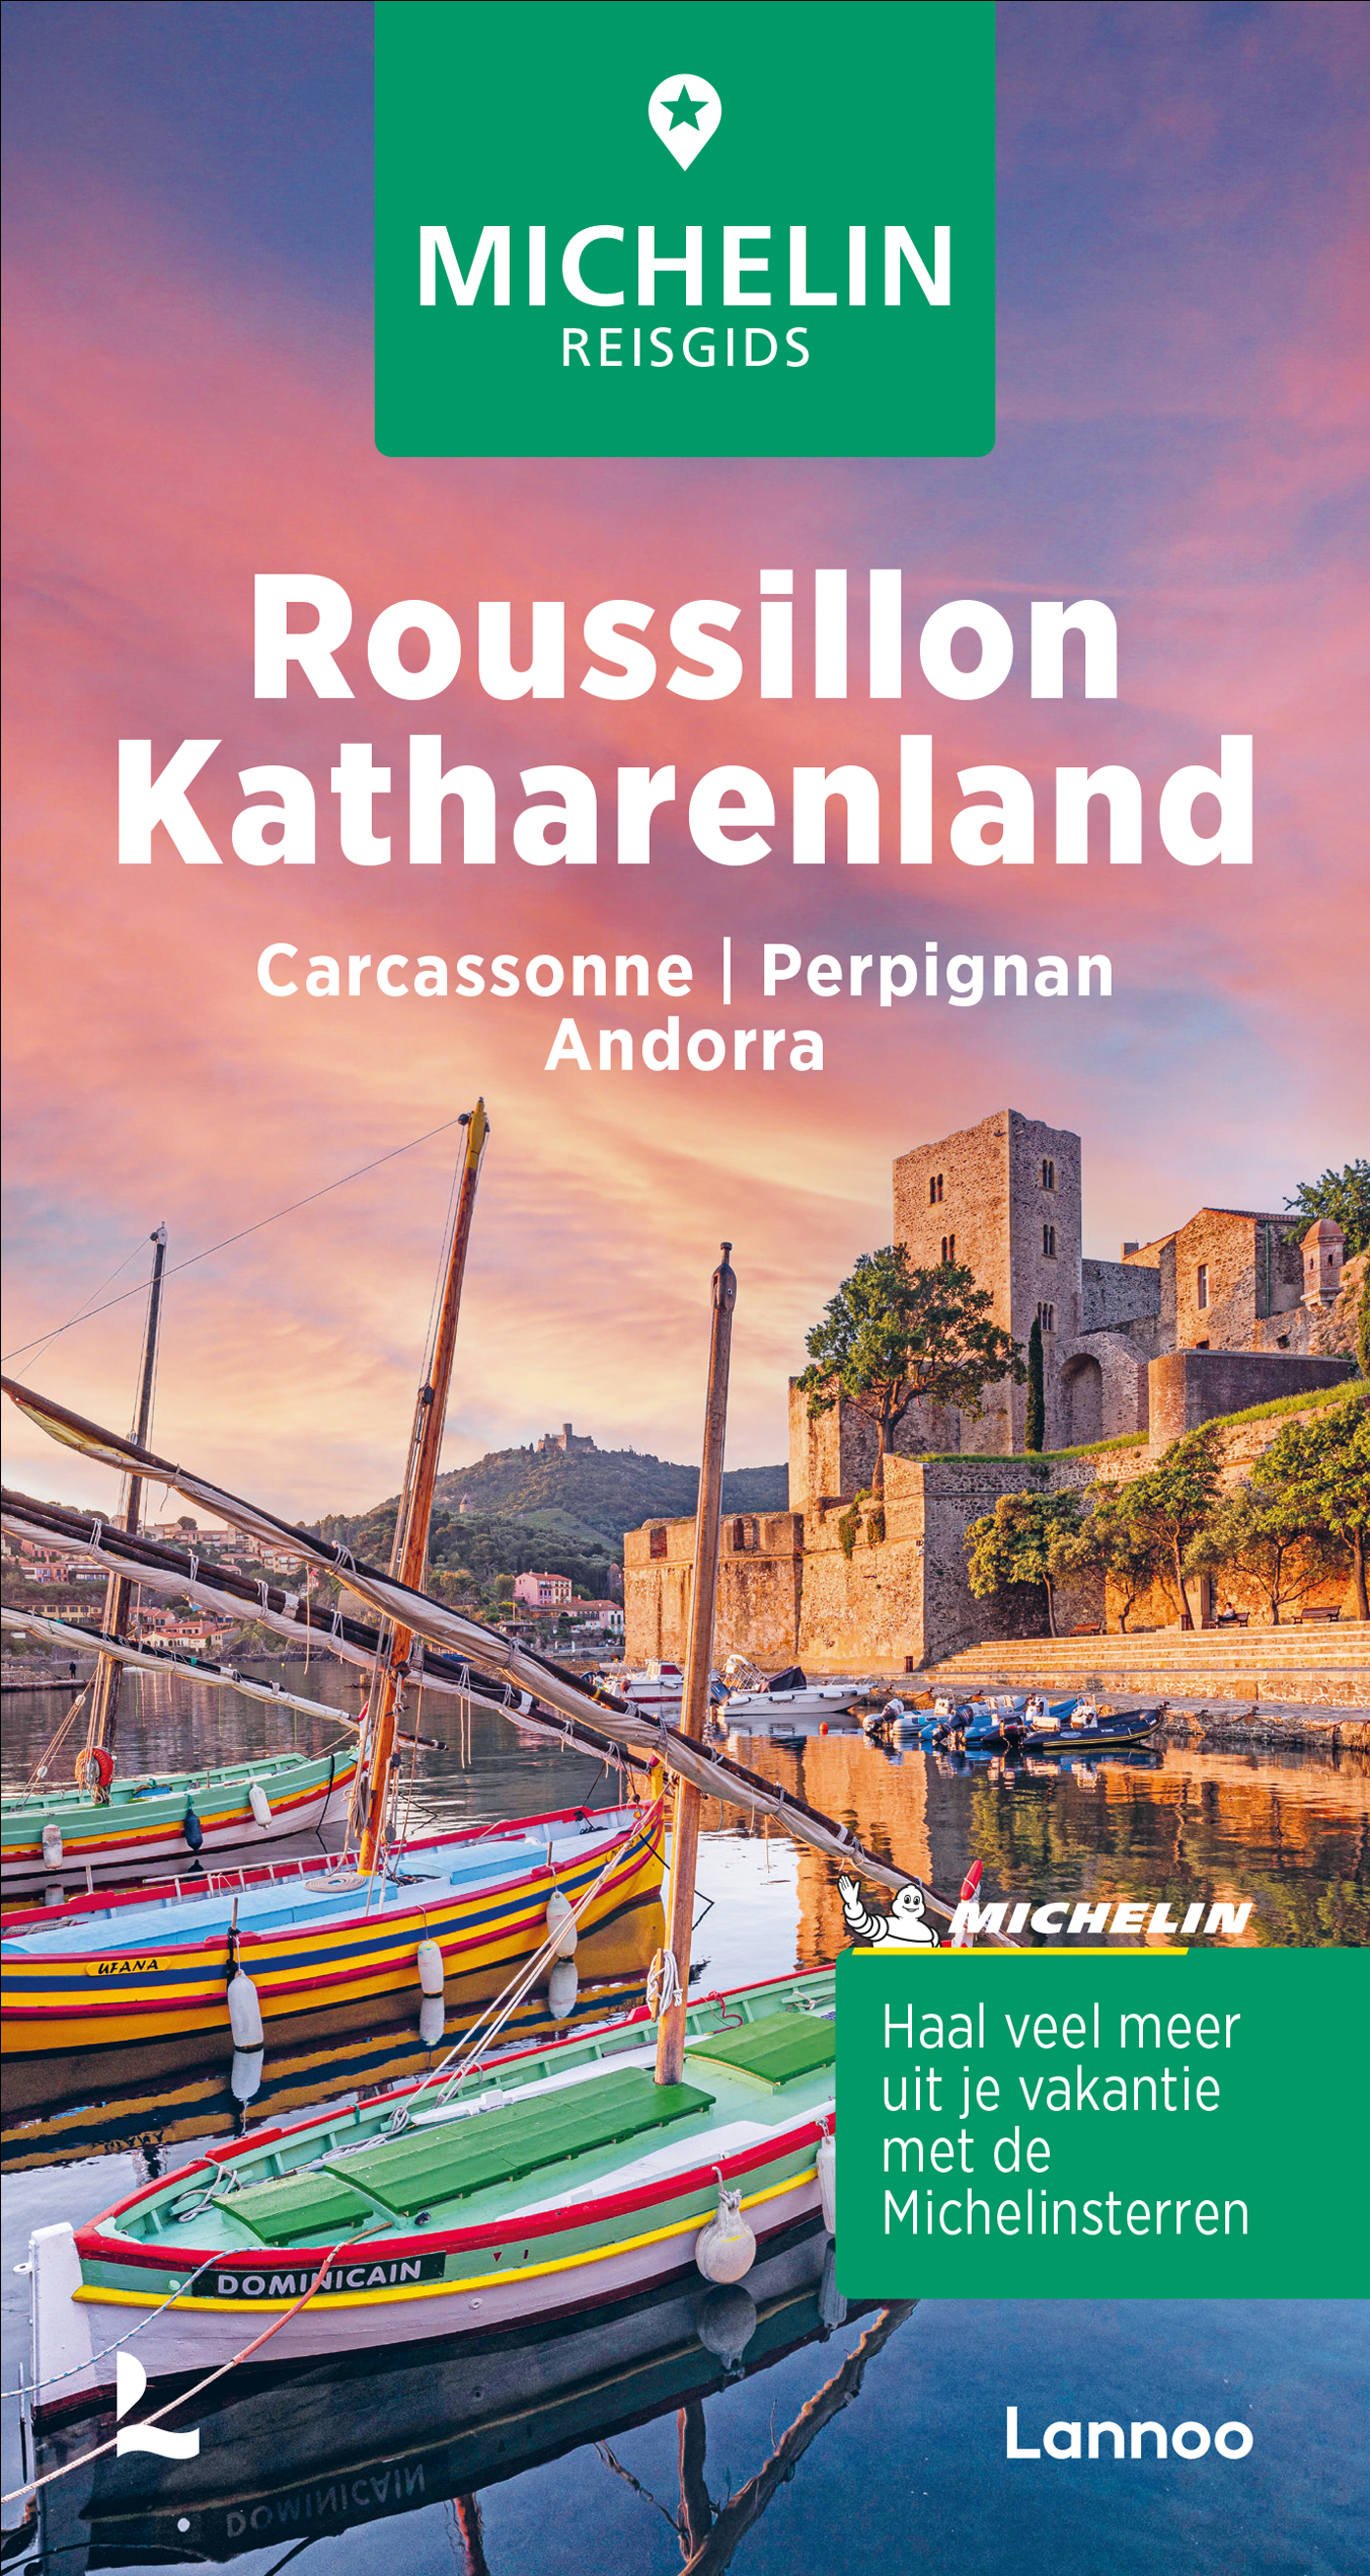 Online bestellen: Reisgids Michelin groene gids Roussillon- Katharenland | Lannoo